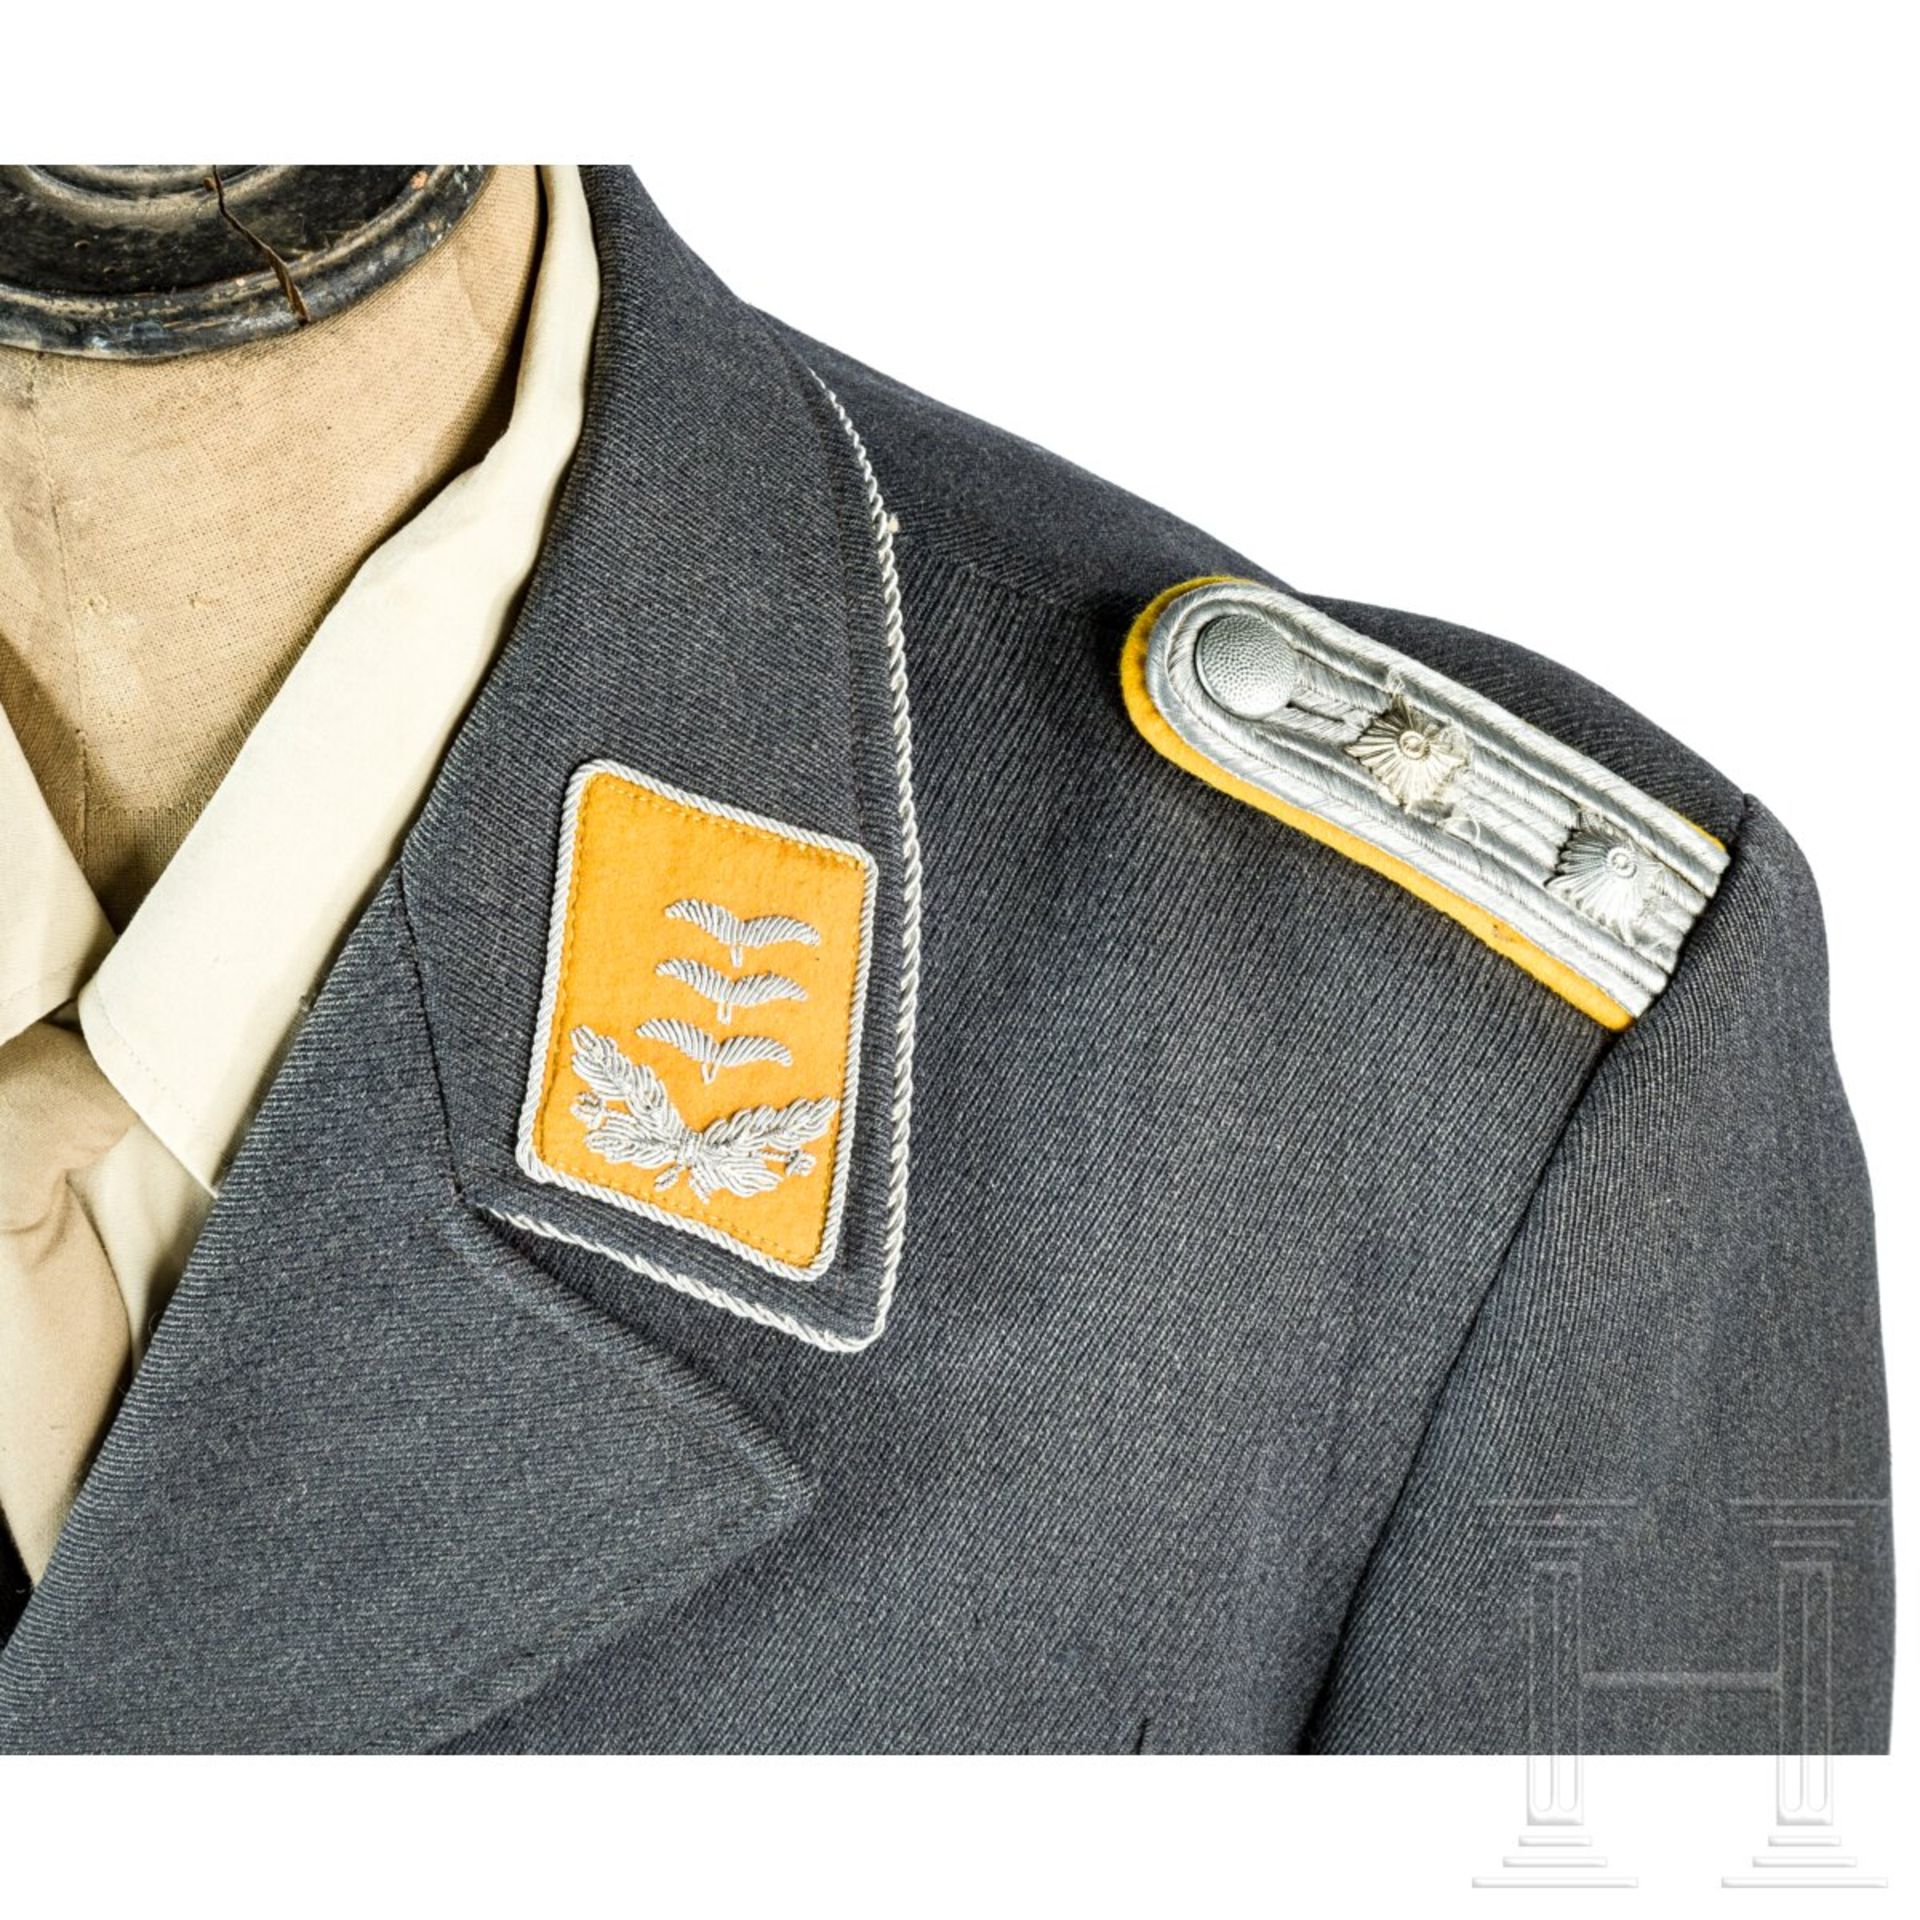 Uniformensemble für einen Hauptmann der Flieger- oder Fallschirmtruppe - Image 3 of 9